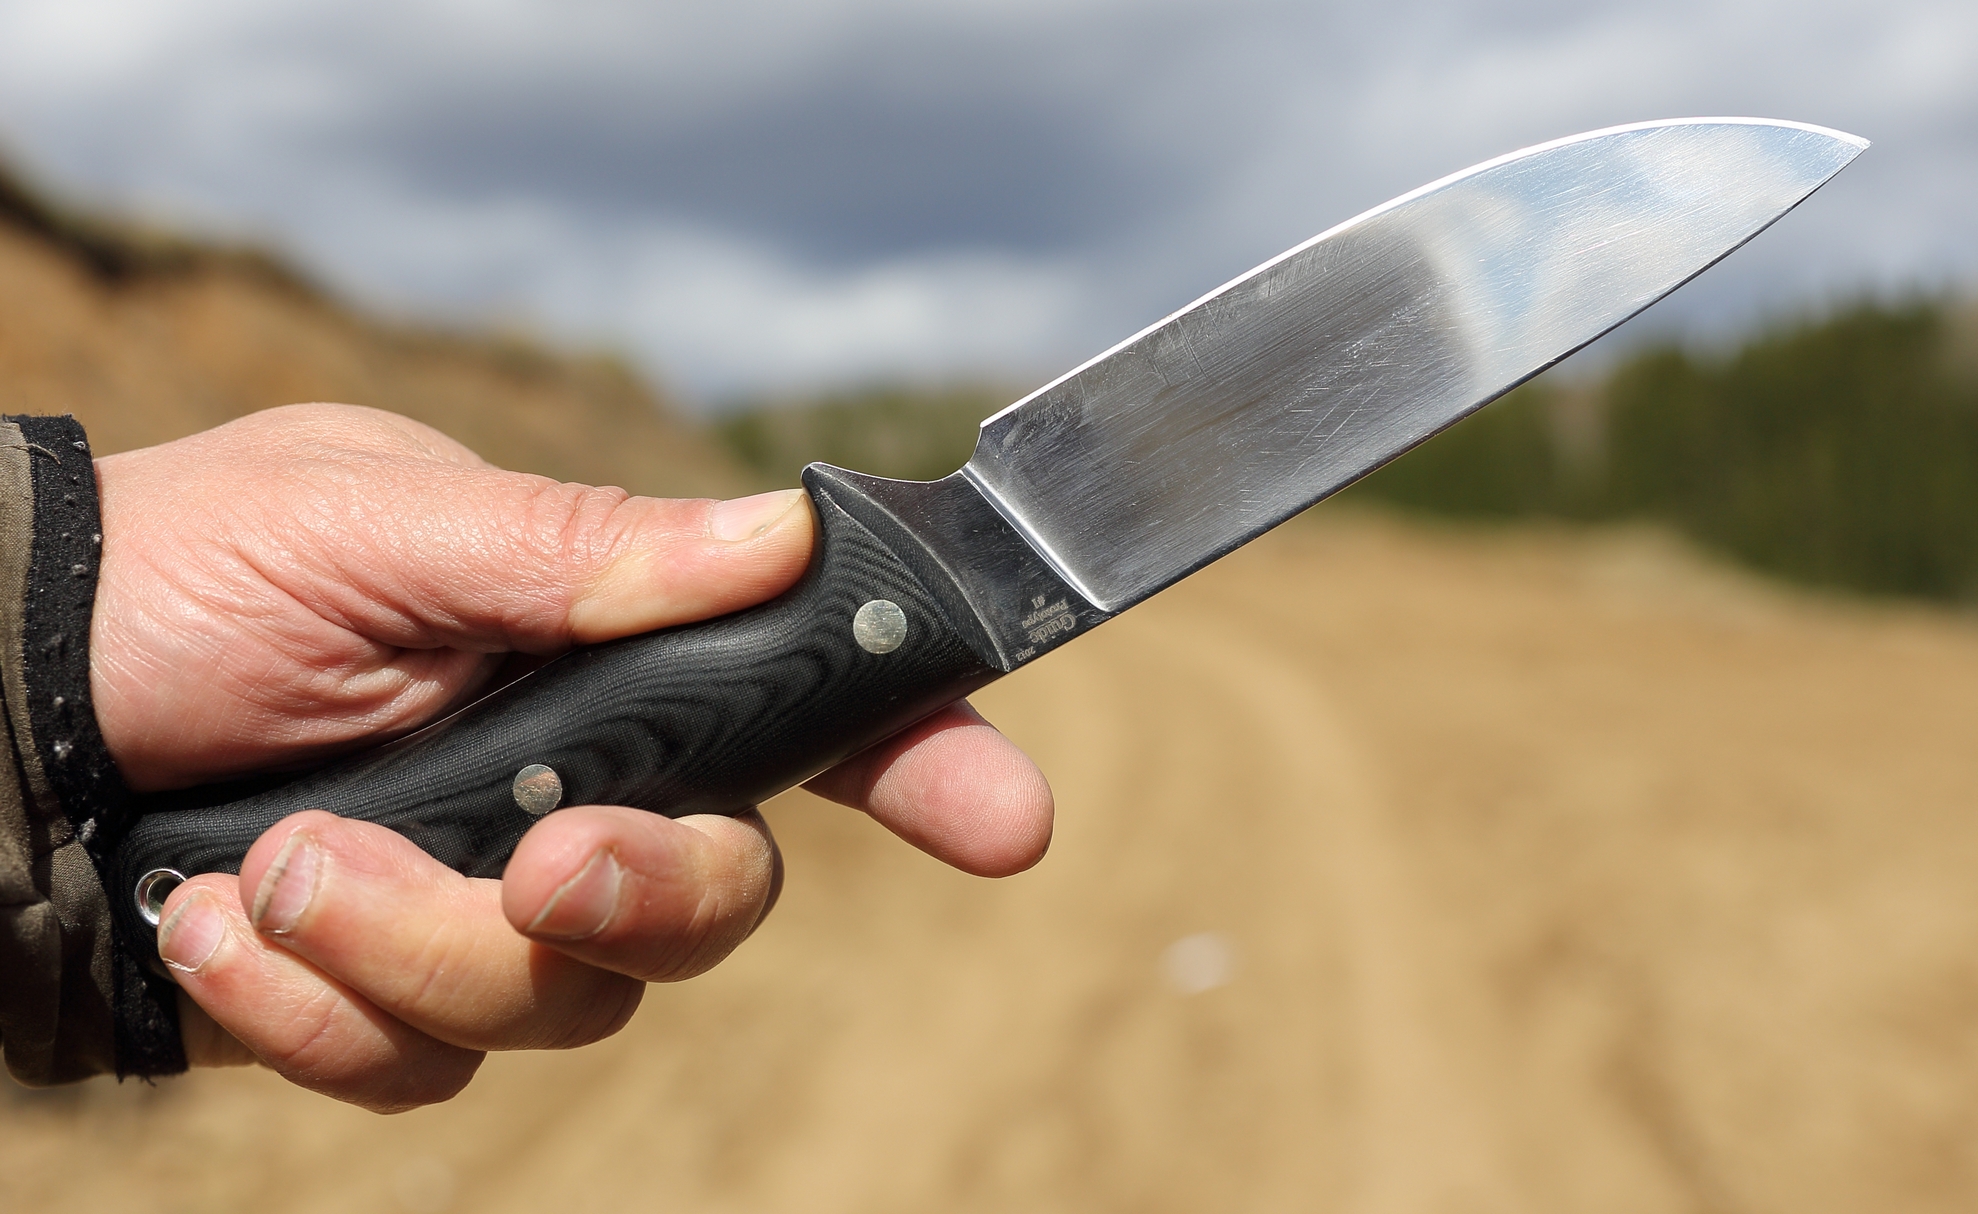 Убийство по неосторожности: во время соревнований по метанию ножа жена случайно убила супруга